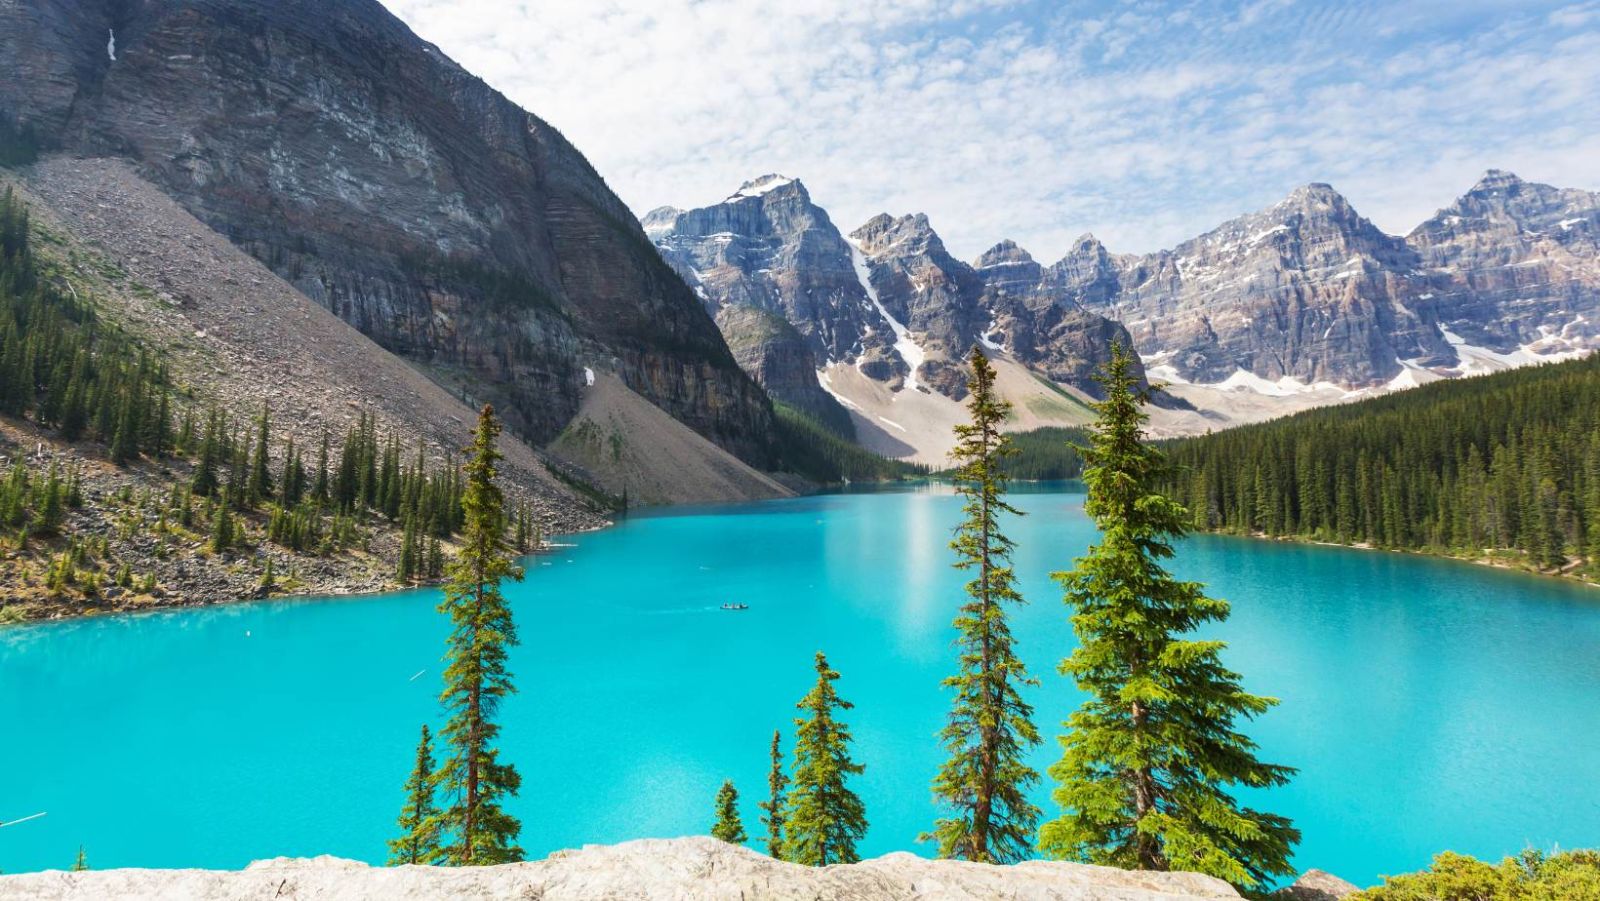 Ce lac canadien aux eaux turquoise est entouré de 10 sommets à plus de 3000m d'altitude